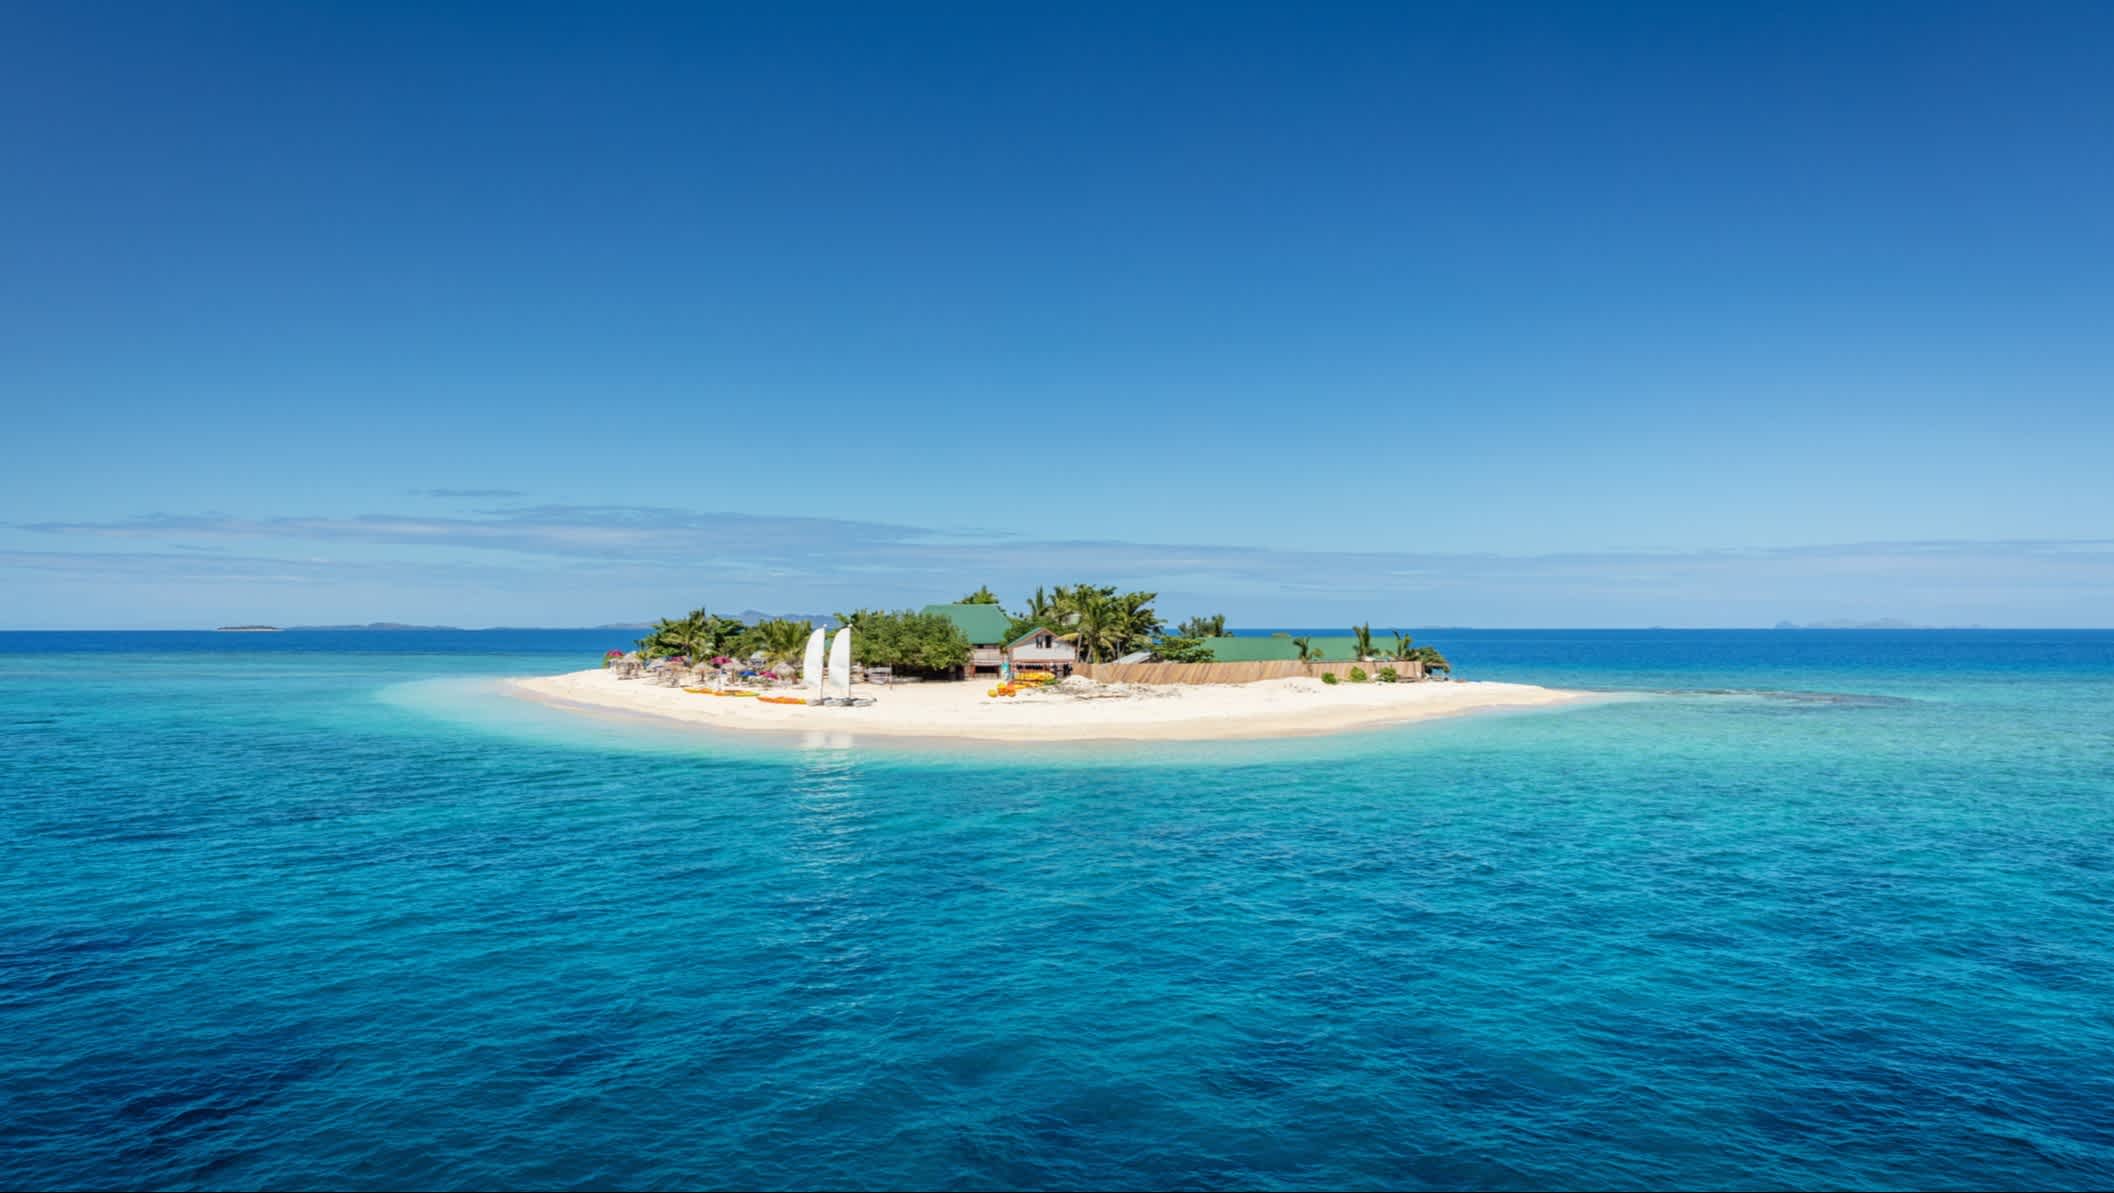 Schöne kleine Insel mitten im Südpazifik, Mamanuca-Inseln, Fidschi.

